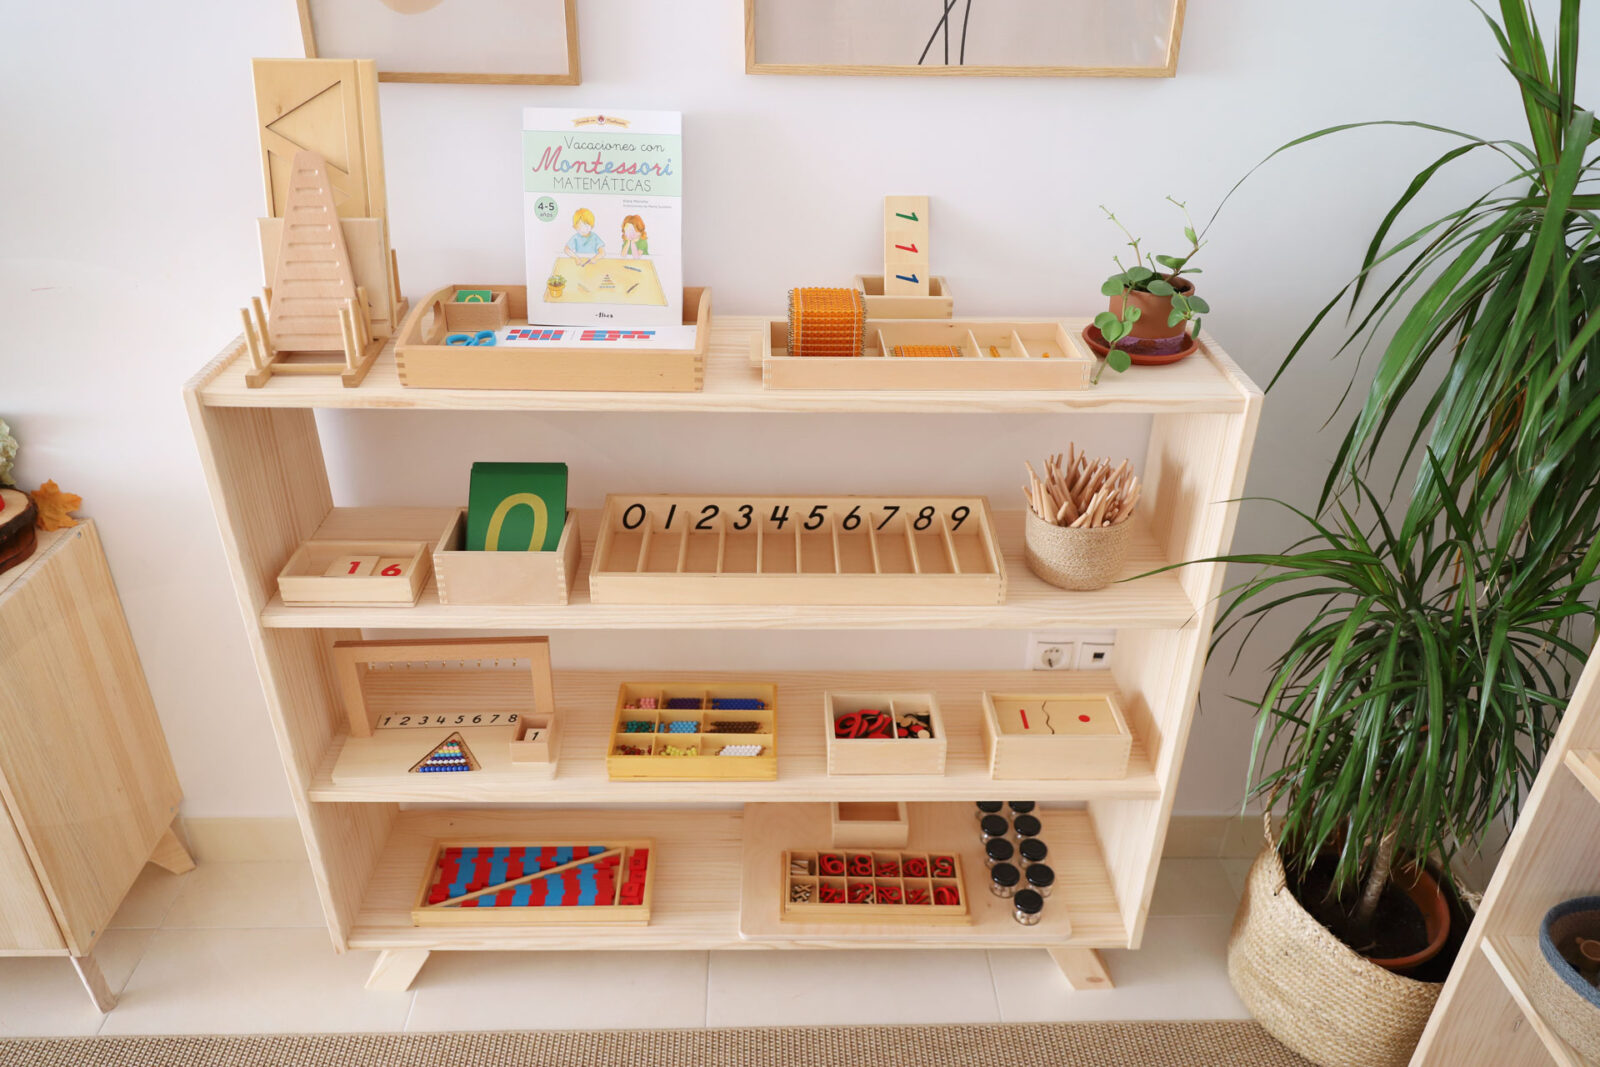 Estanterías Montessori - Creciendo felices